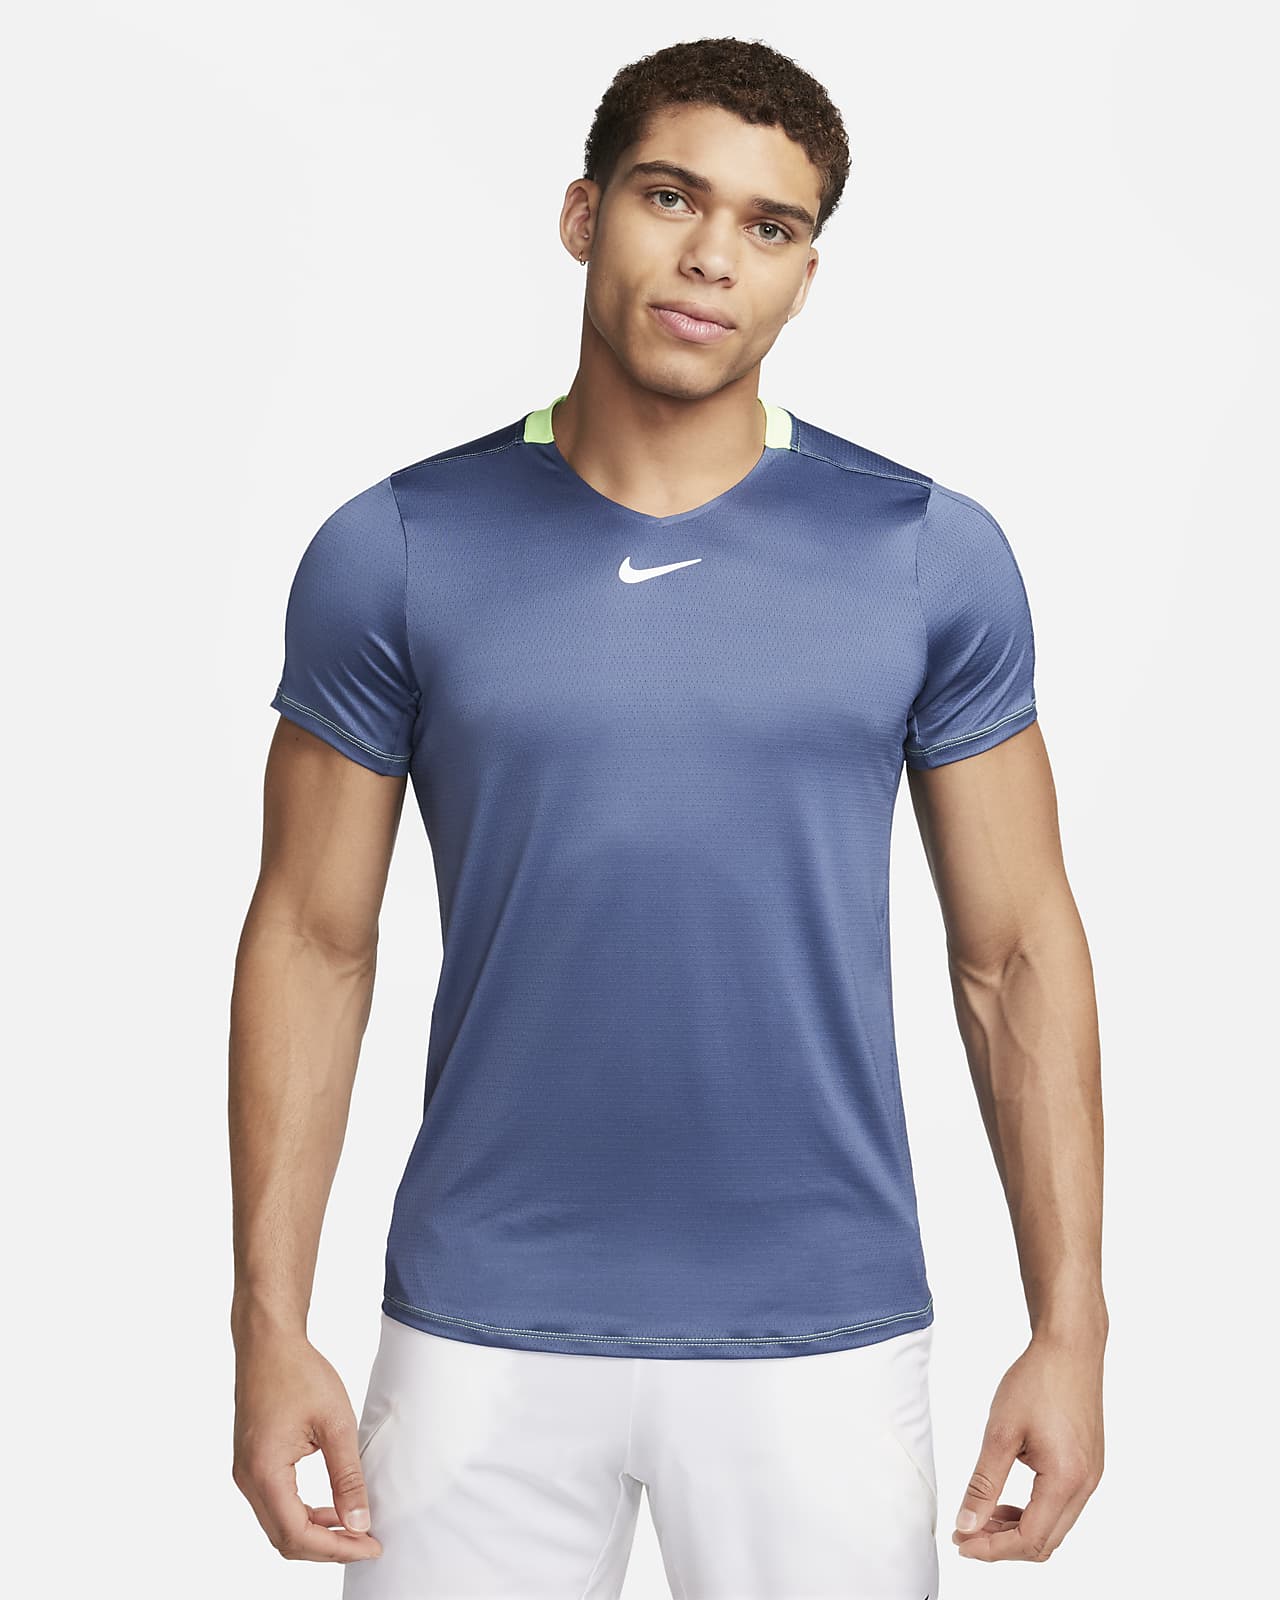 NikeCourt Dri-FIT Advantage-tennistrøje til mænd